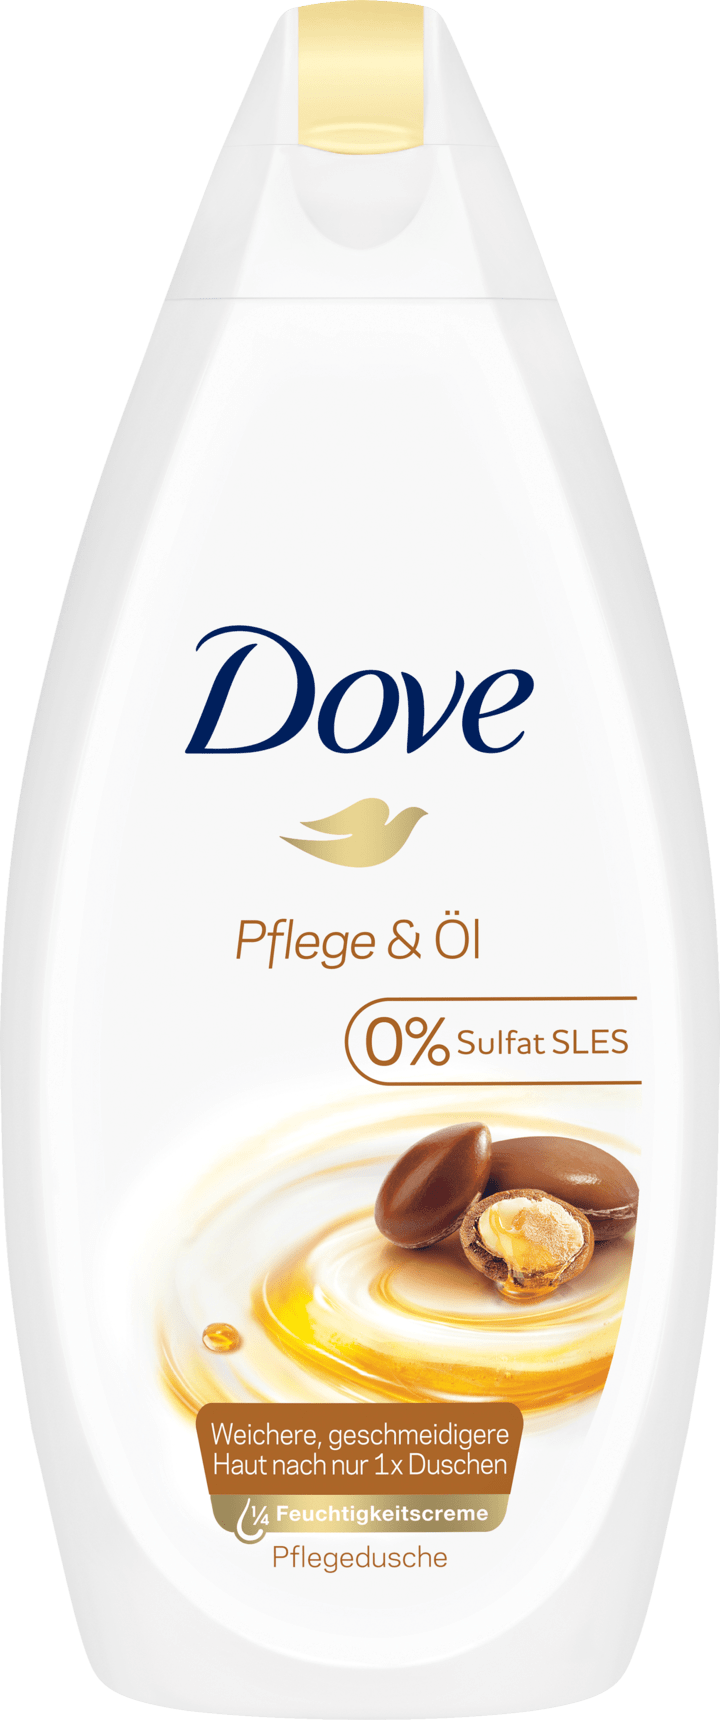 Dove Cream Shower Care & Oil, 400 Ml